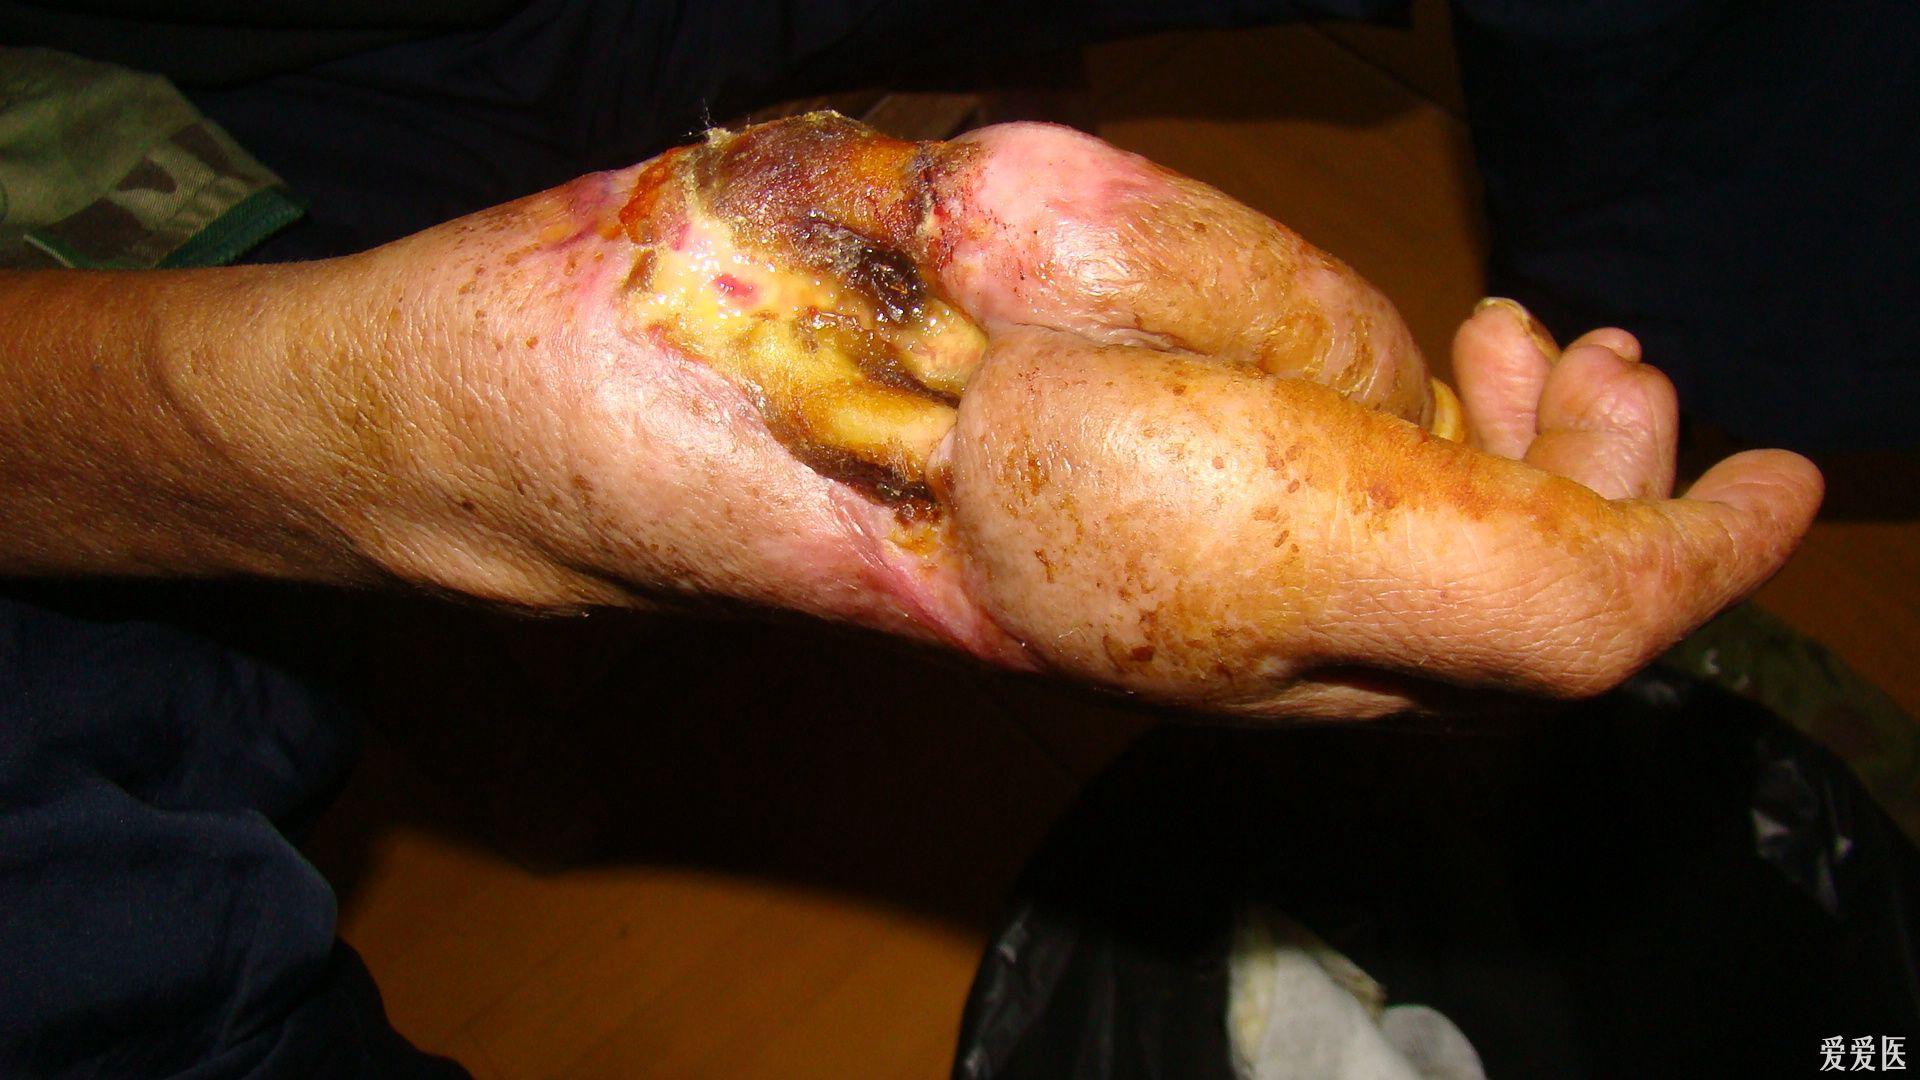 五步蛇咬伤右手背侧3个月后掌骨外露如何处理